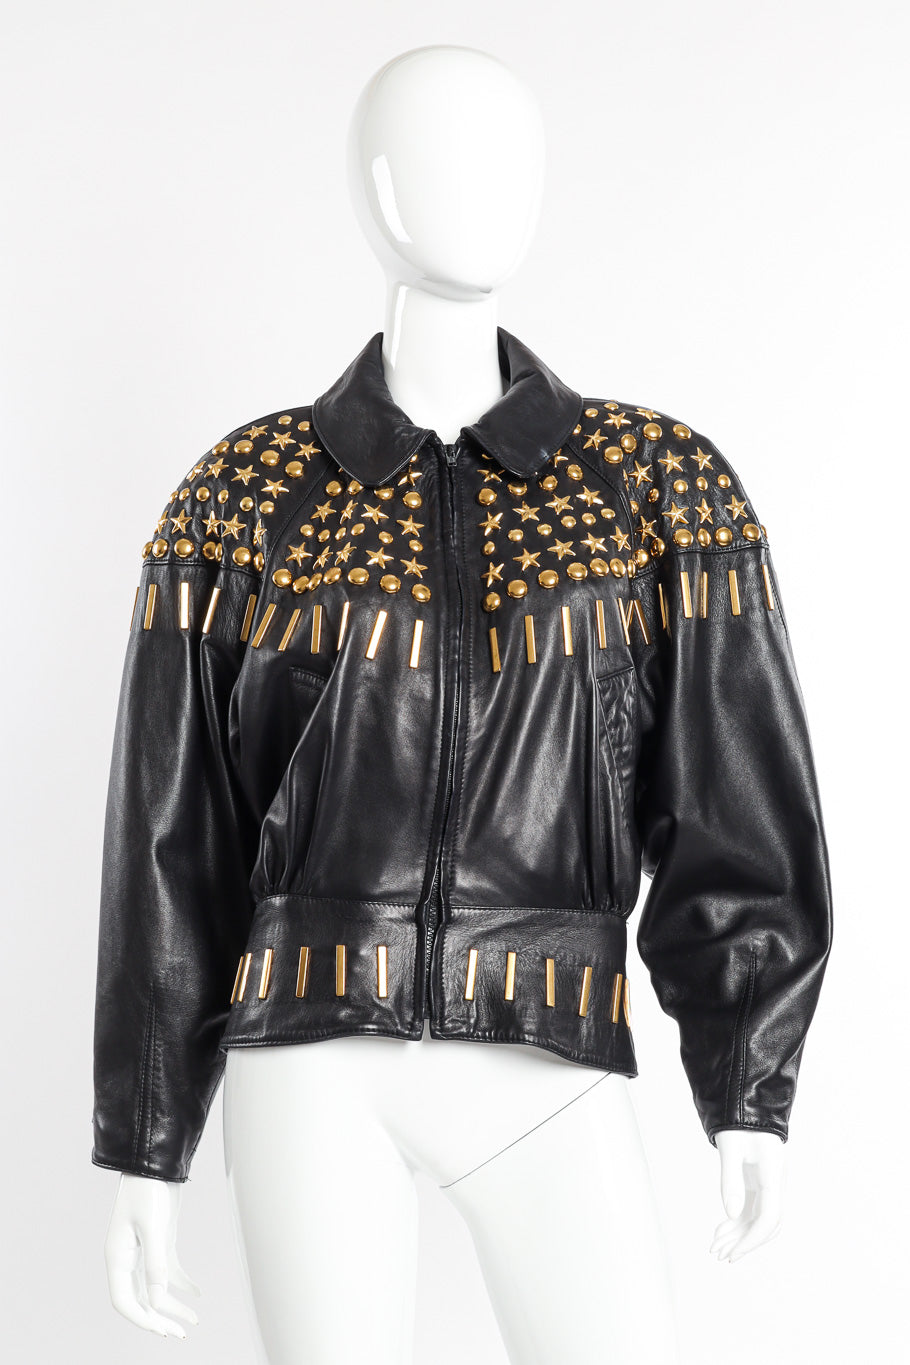 Vintage Lina Lee Studded Leather Jacket front on mannequin @recessla